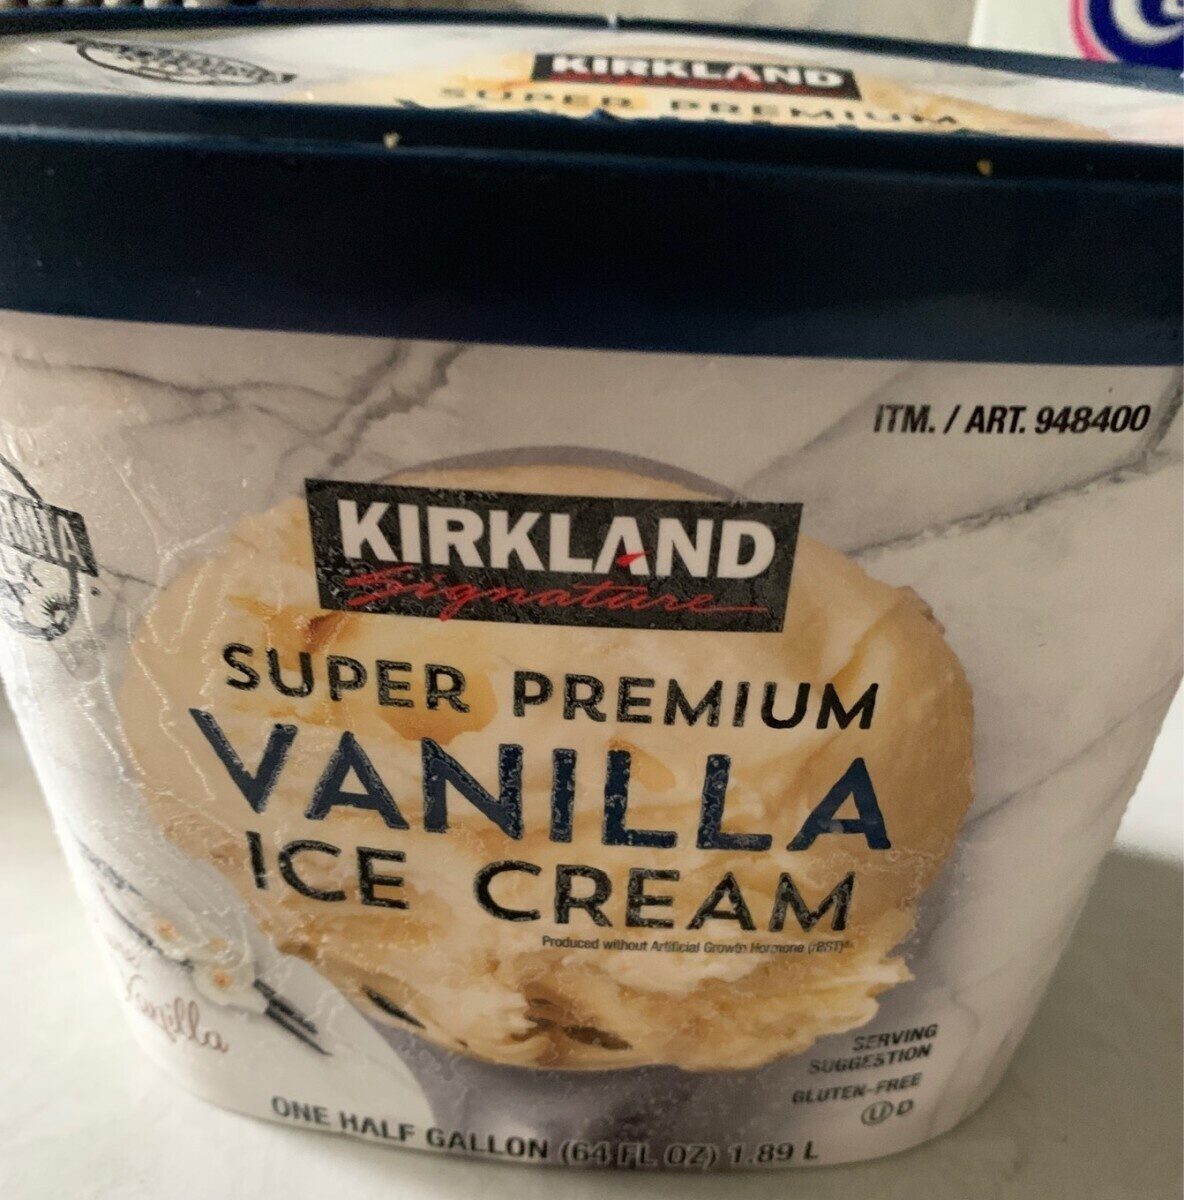 costco vanilla ice cream